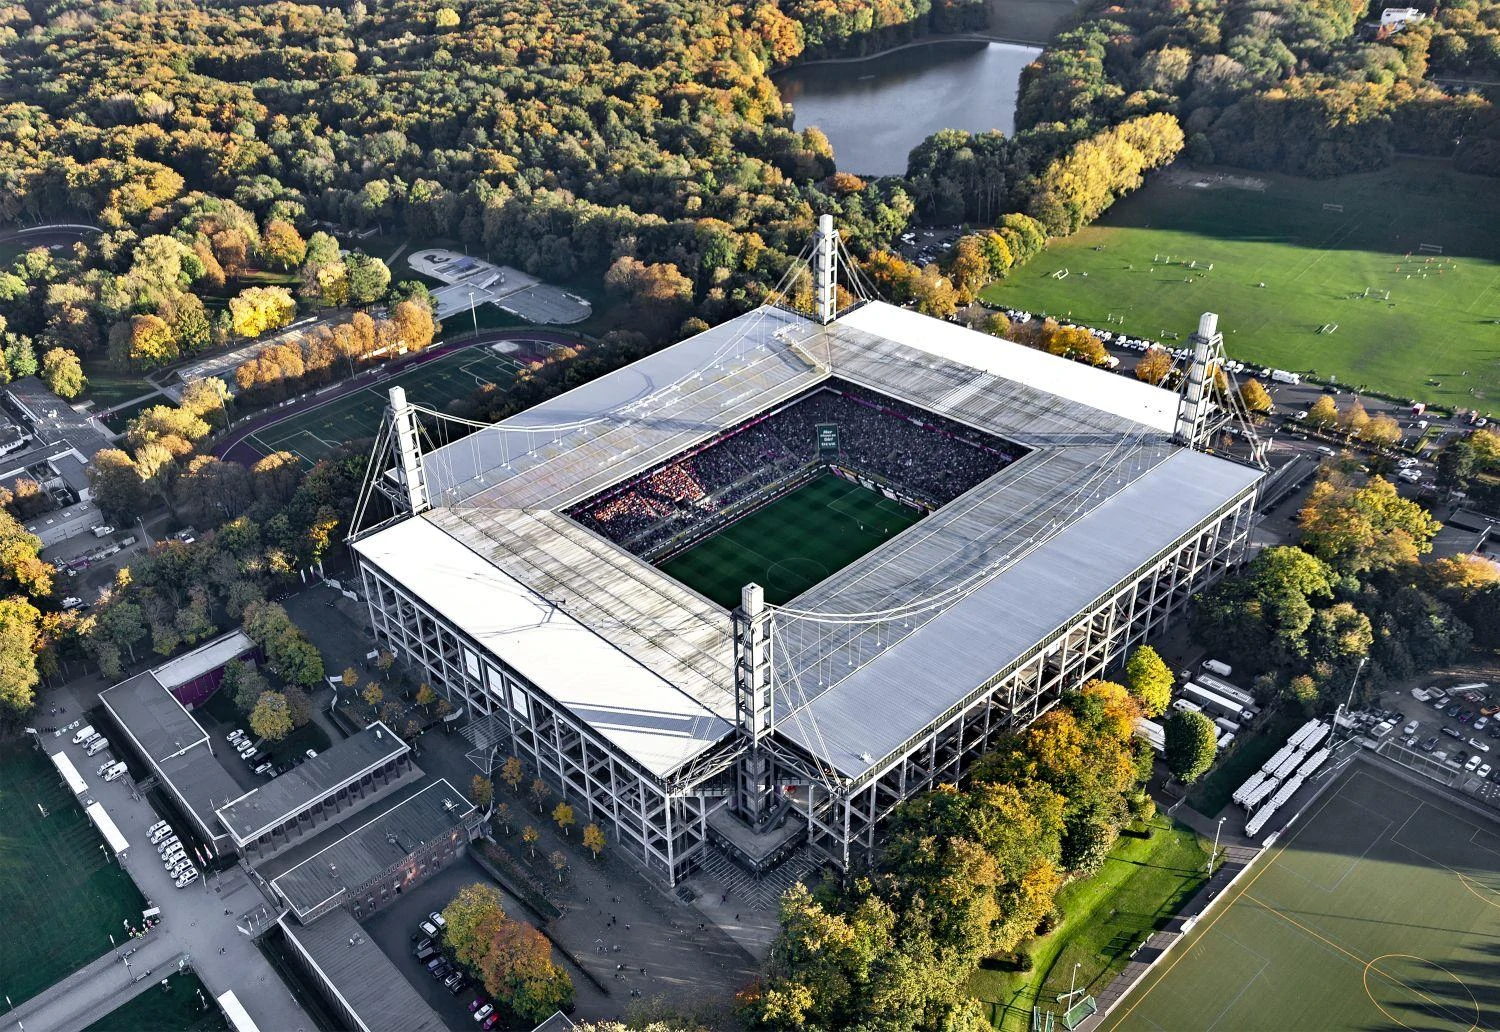 Stadion: RheinEnergieSTADION